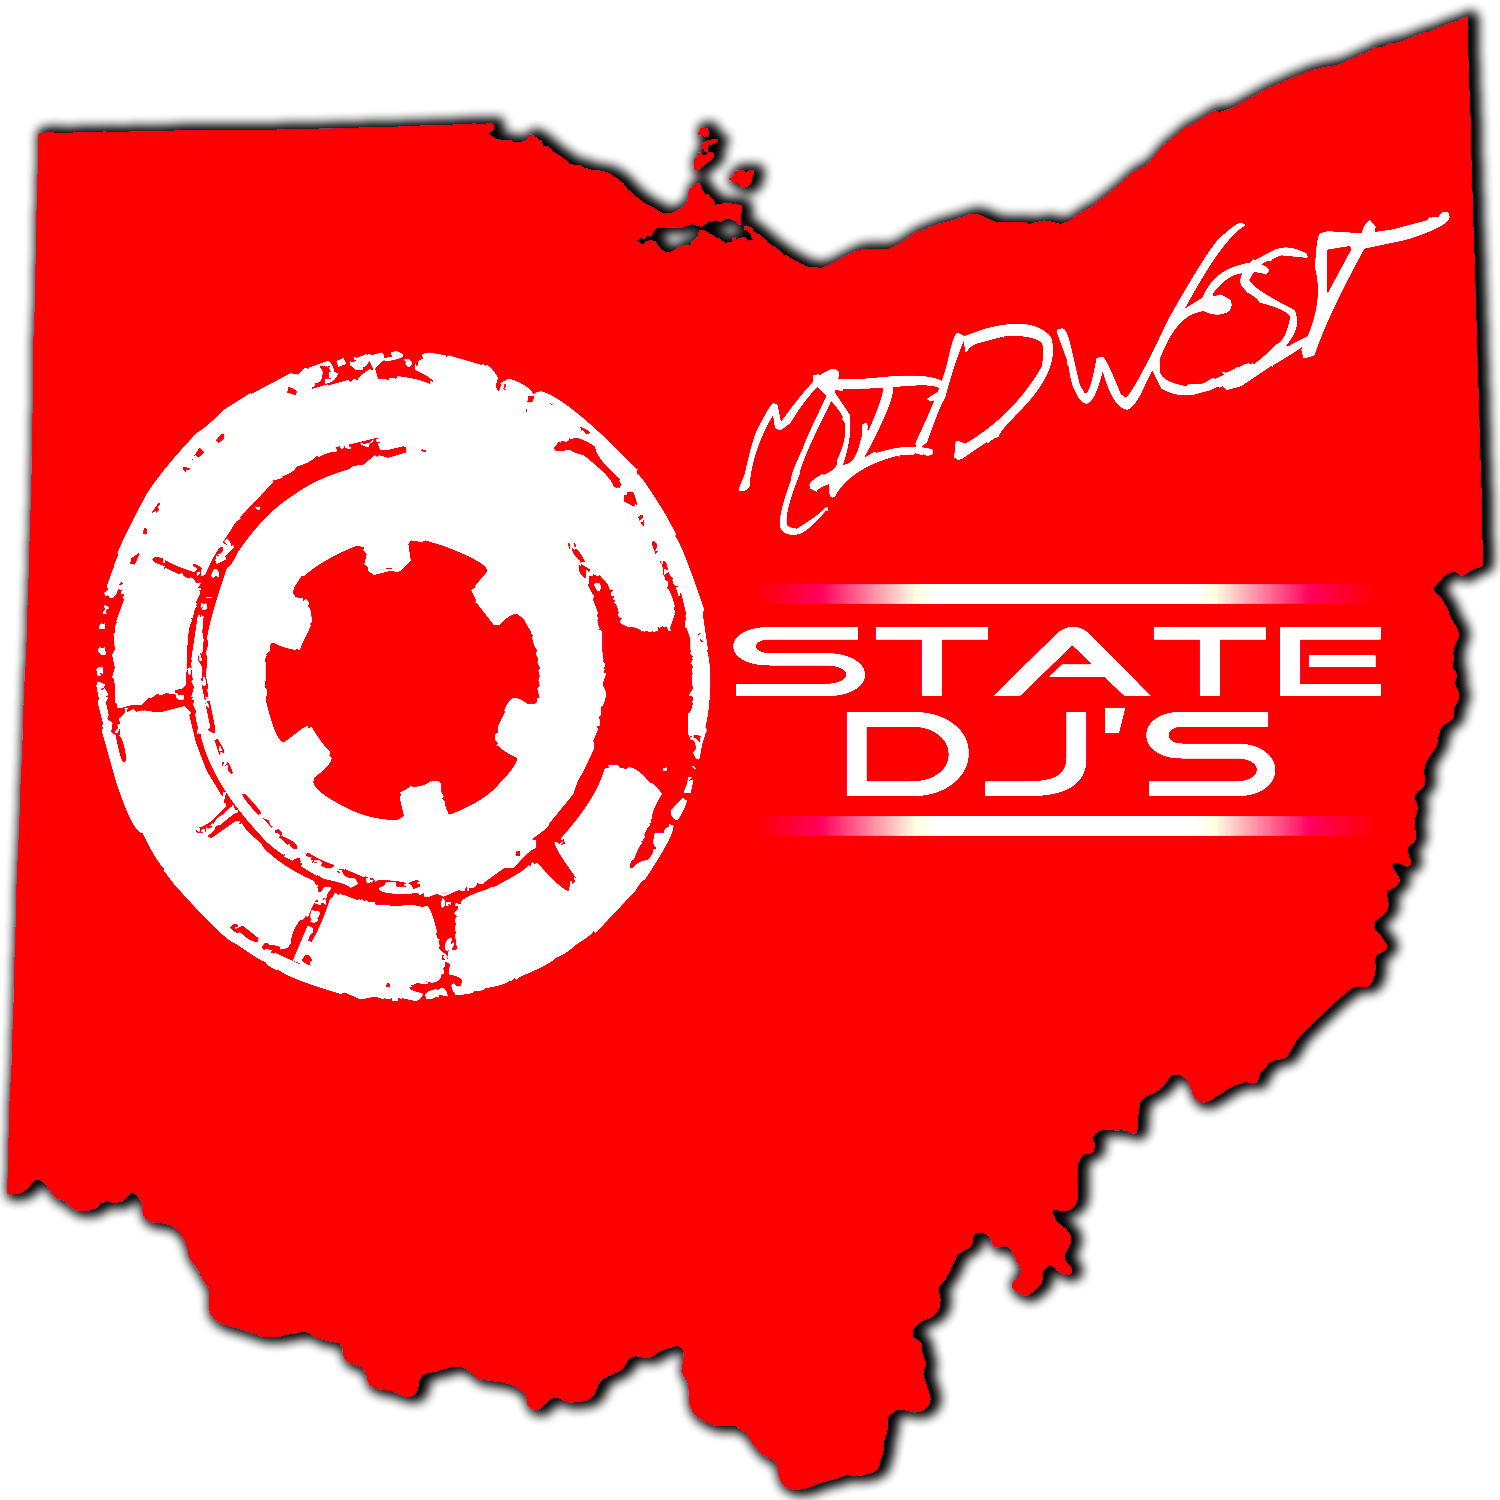 O State DJs